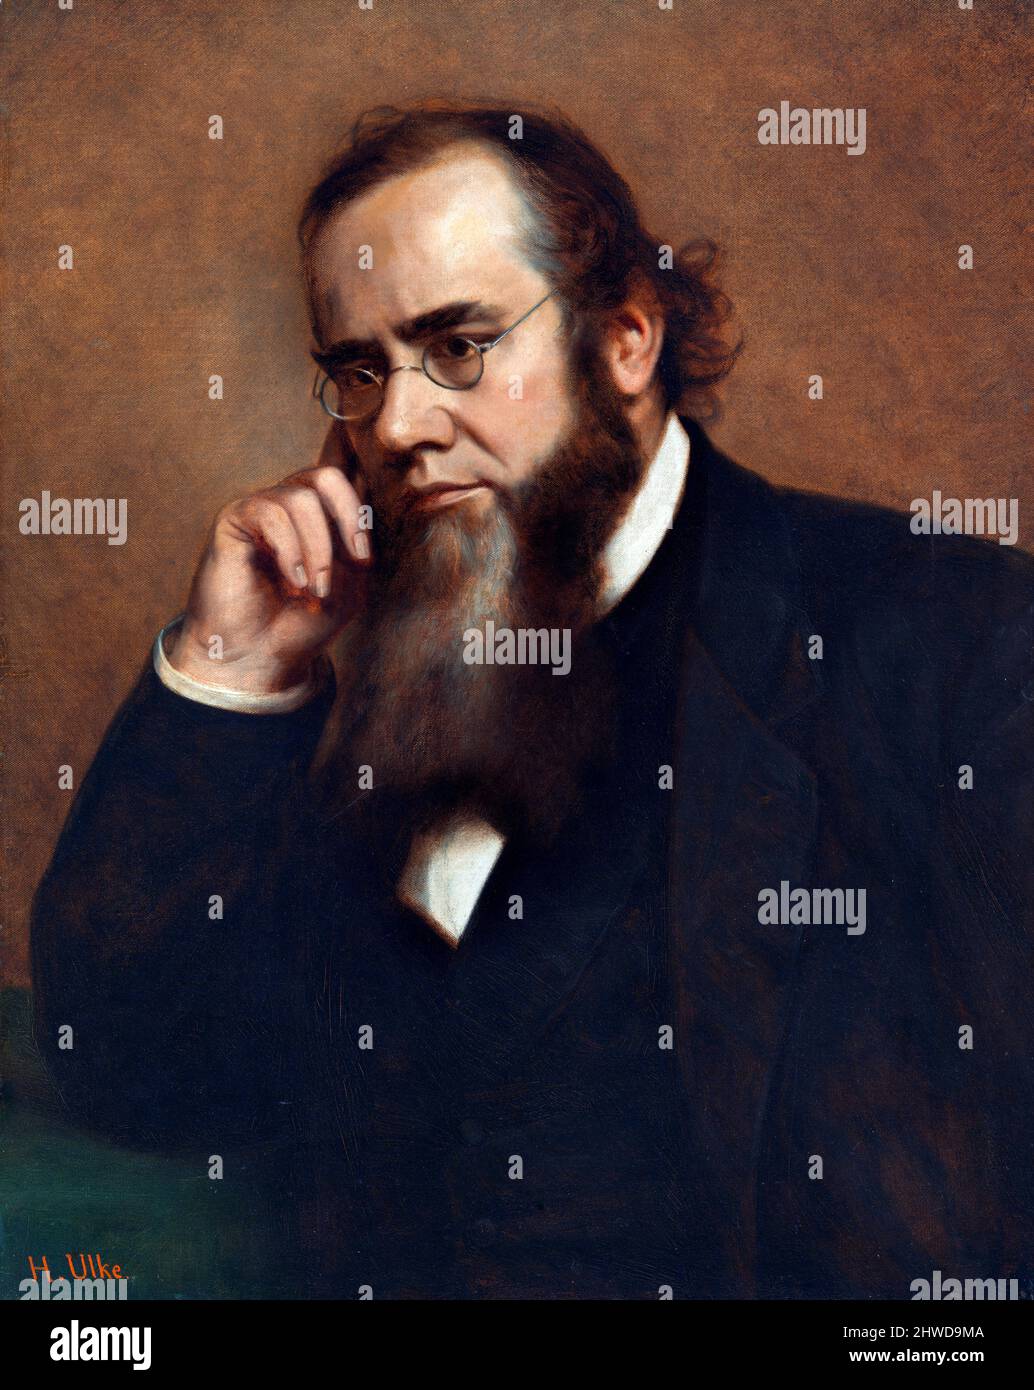 Ritratto del Segretario di guerra degli Stati Uniti nell'amministrazione Lincoln, Edwin McMasters Stanton (1814-1869) di Henry Ulke, petrolio su tela, 1872 Foto Stock